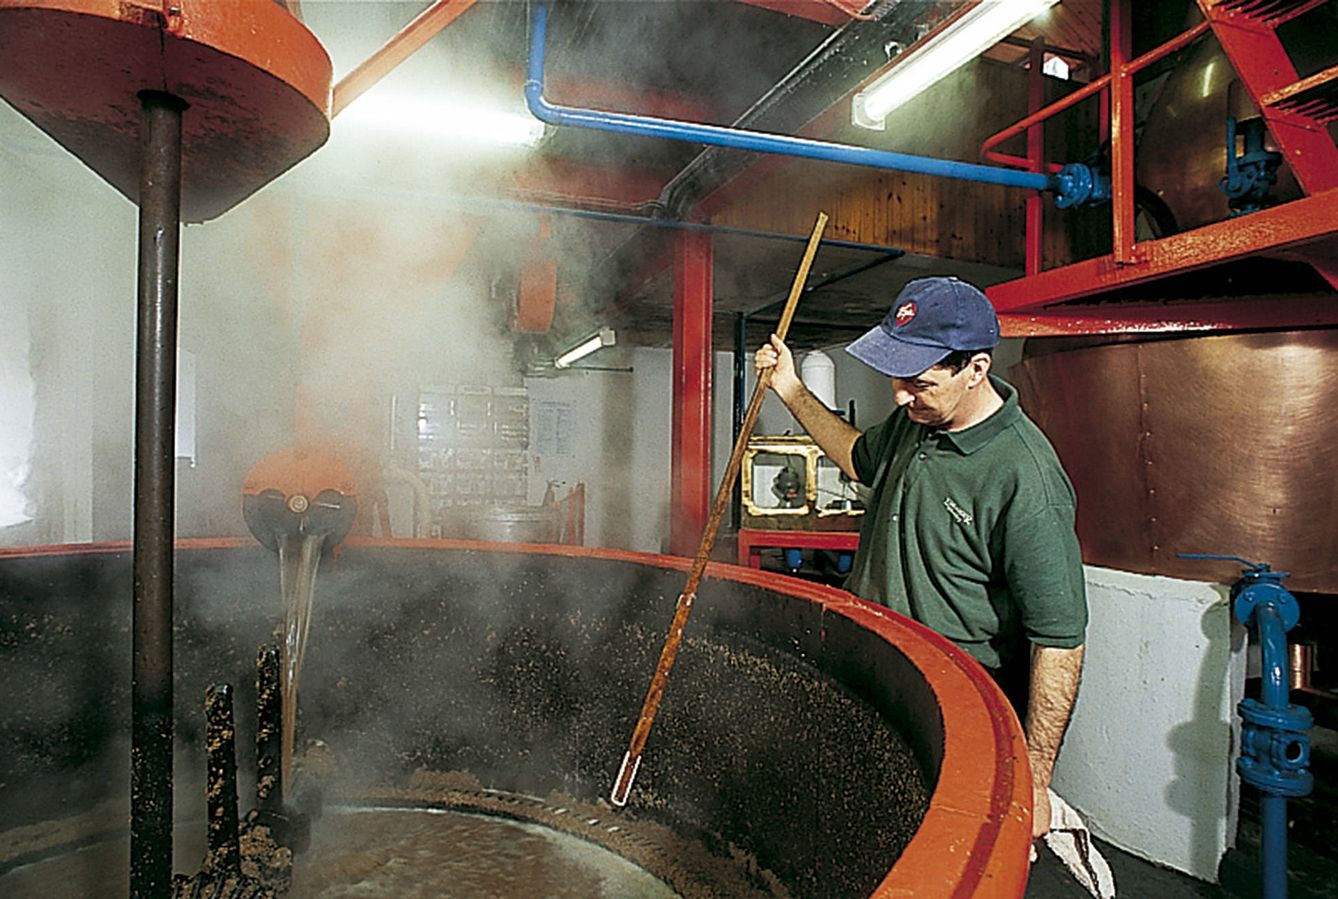 La verificación de la maduración del whisky se efectúa ejerciendo el control en el mismo barril. (Sandro Vannini)